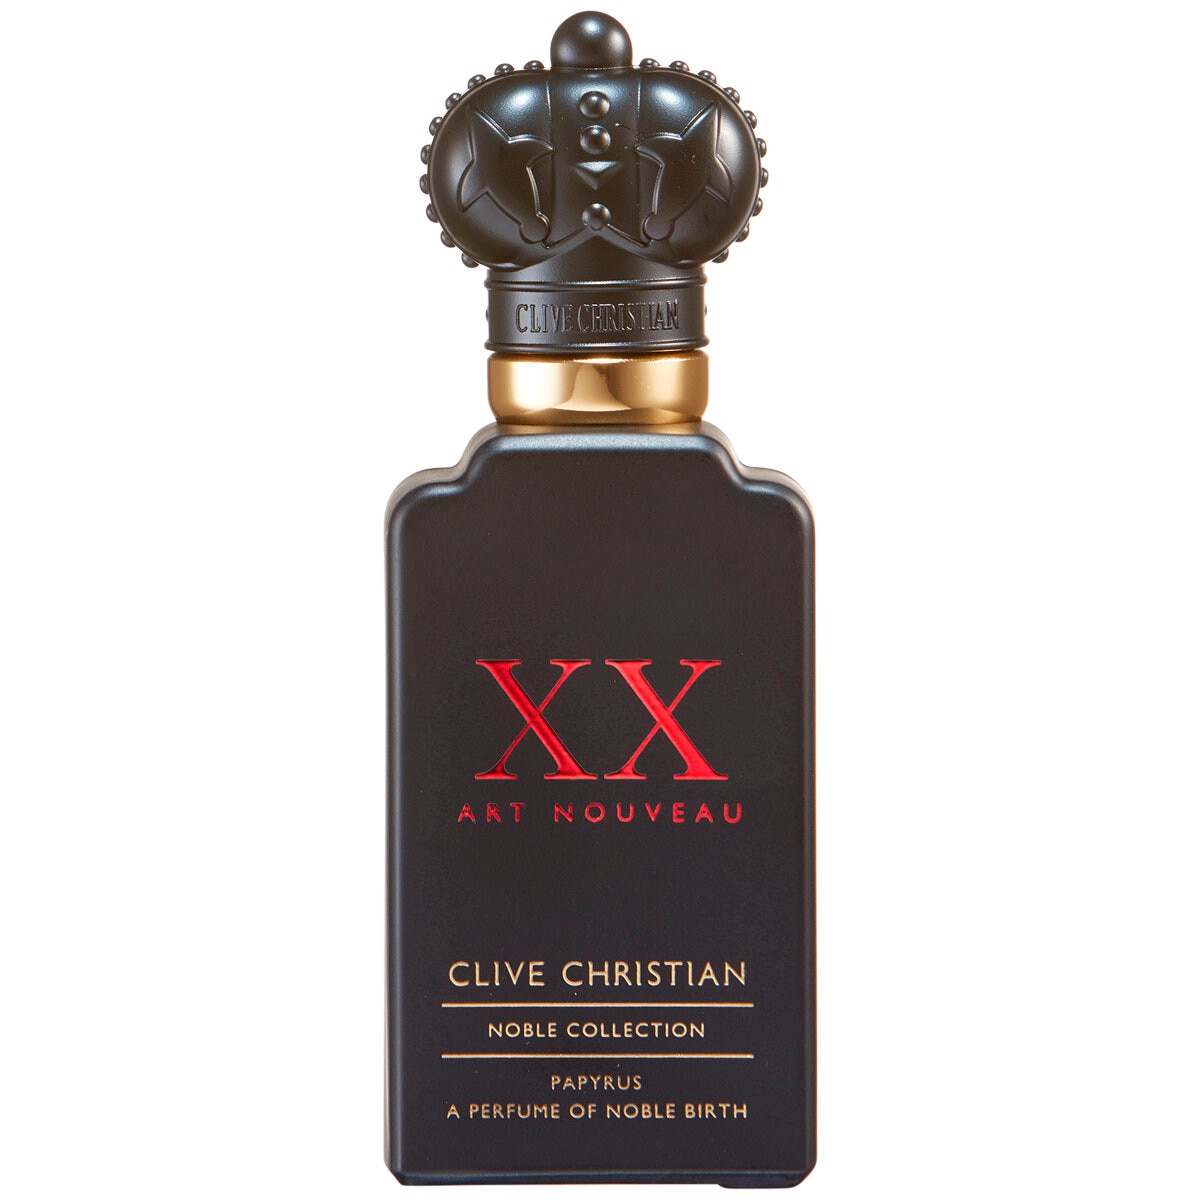 Clive Christan Noble Collection XX Art Nouveau Papyrus Perfume 50ml